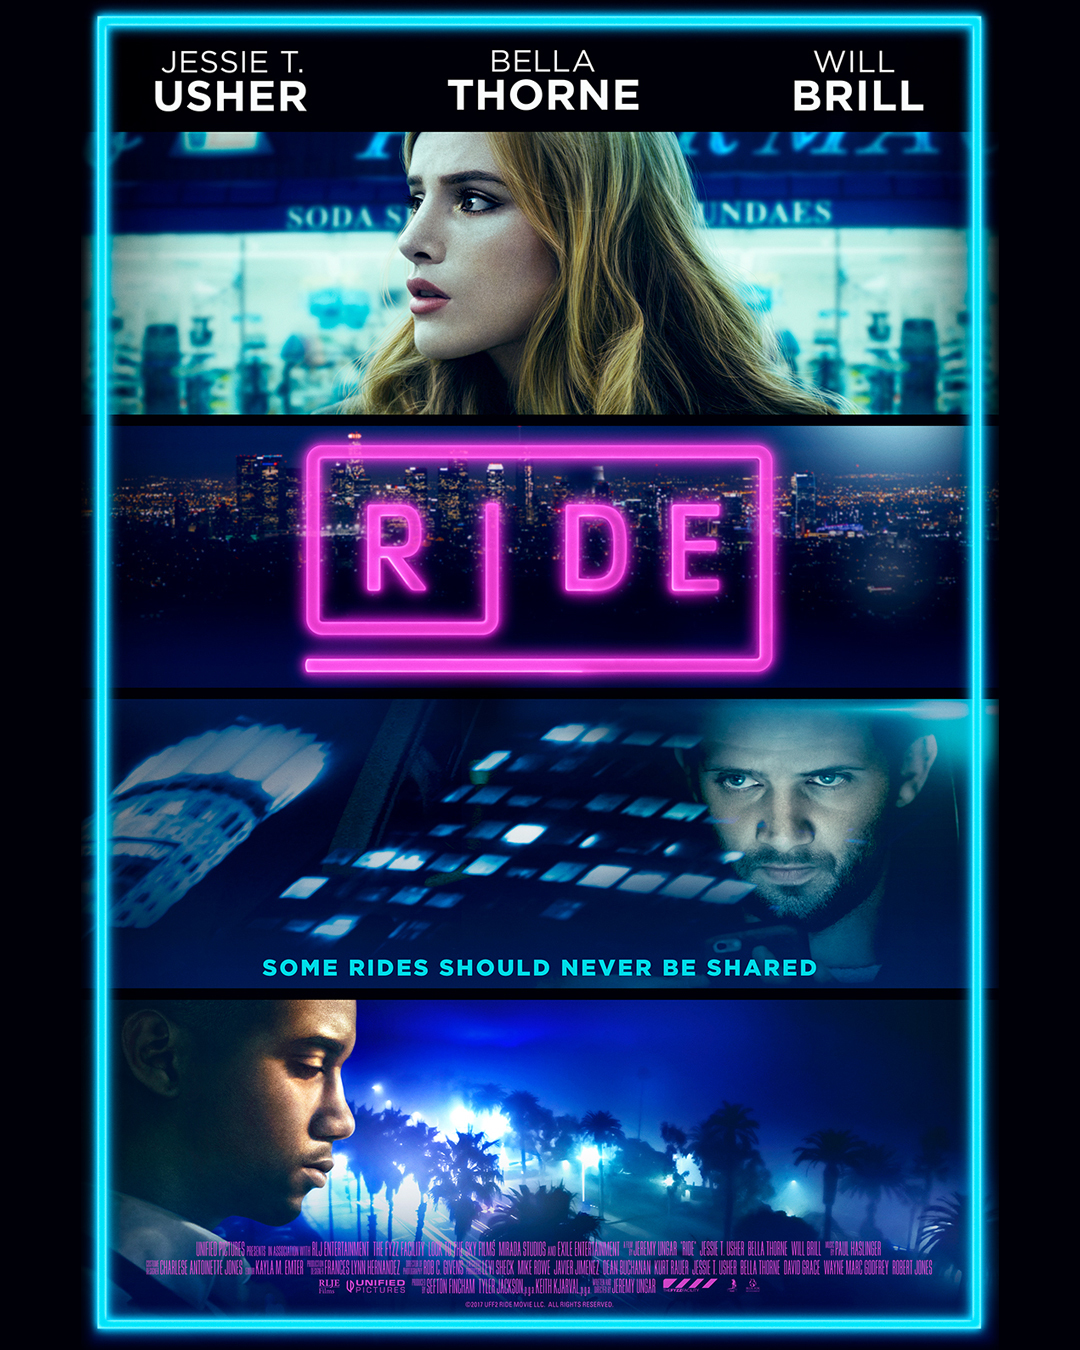 جسی آشر در صحنه فیلم سینمایی Ride به همراه بلا تورن و Will Brill